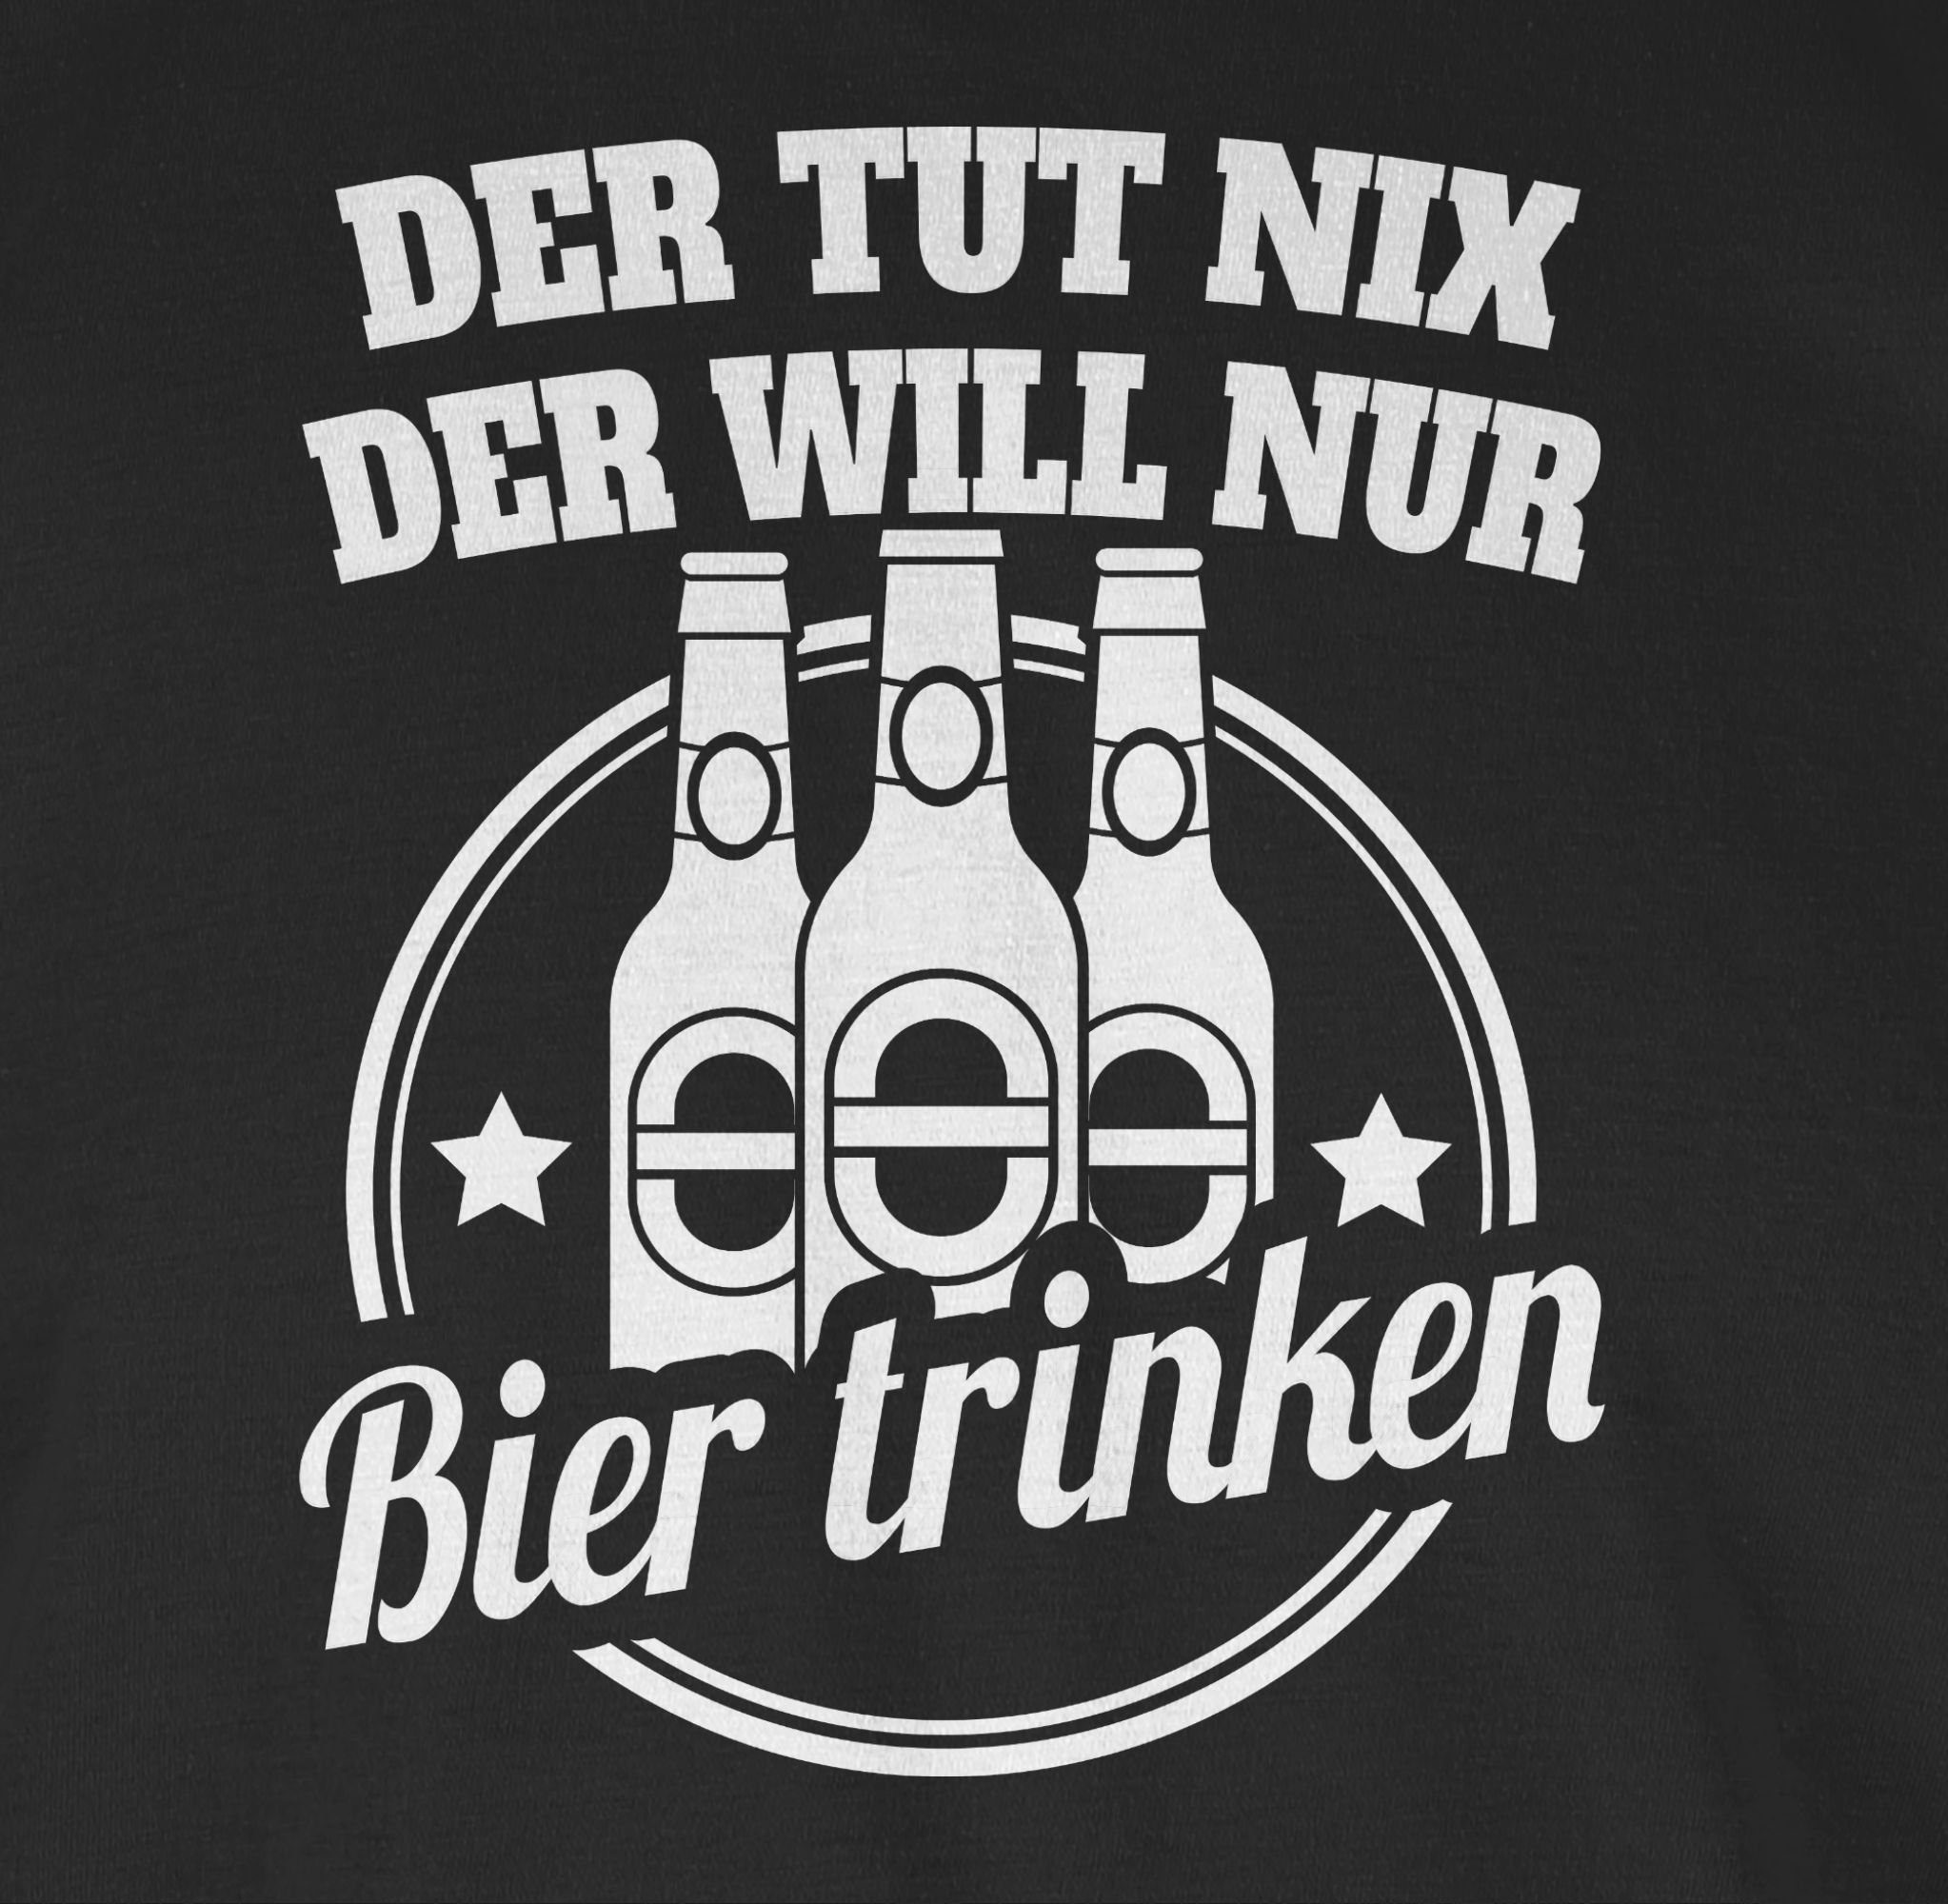 Shirtracer T-Shirt Der tut der Bier 1 will Spruch mit Sprüche nur nix trinken Schwarz Statement